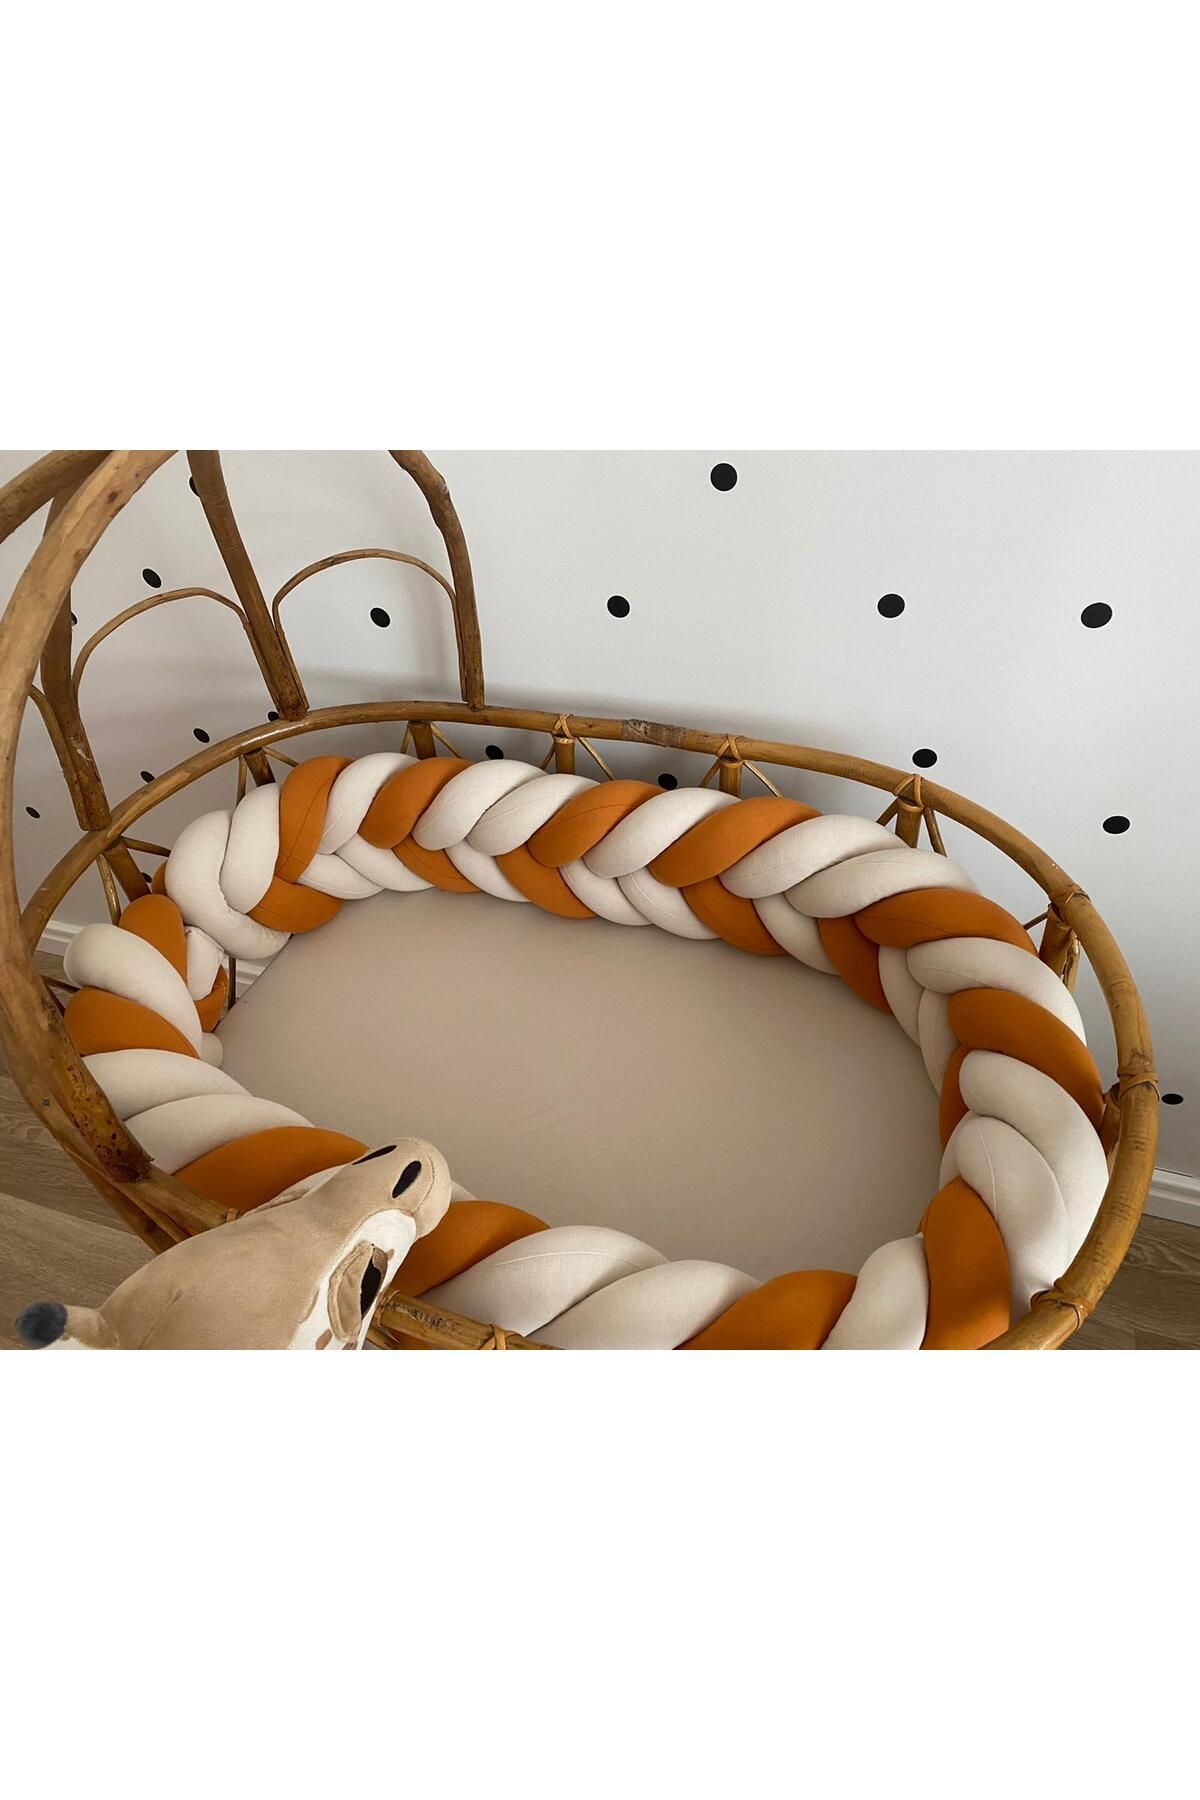 düğüm yastık 440 cm Balık Sırtı model - Tarçın&Bej